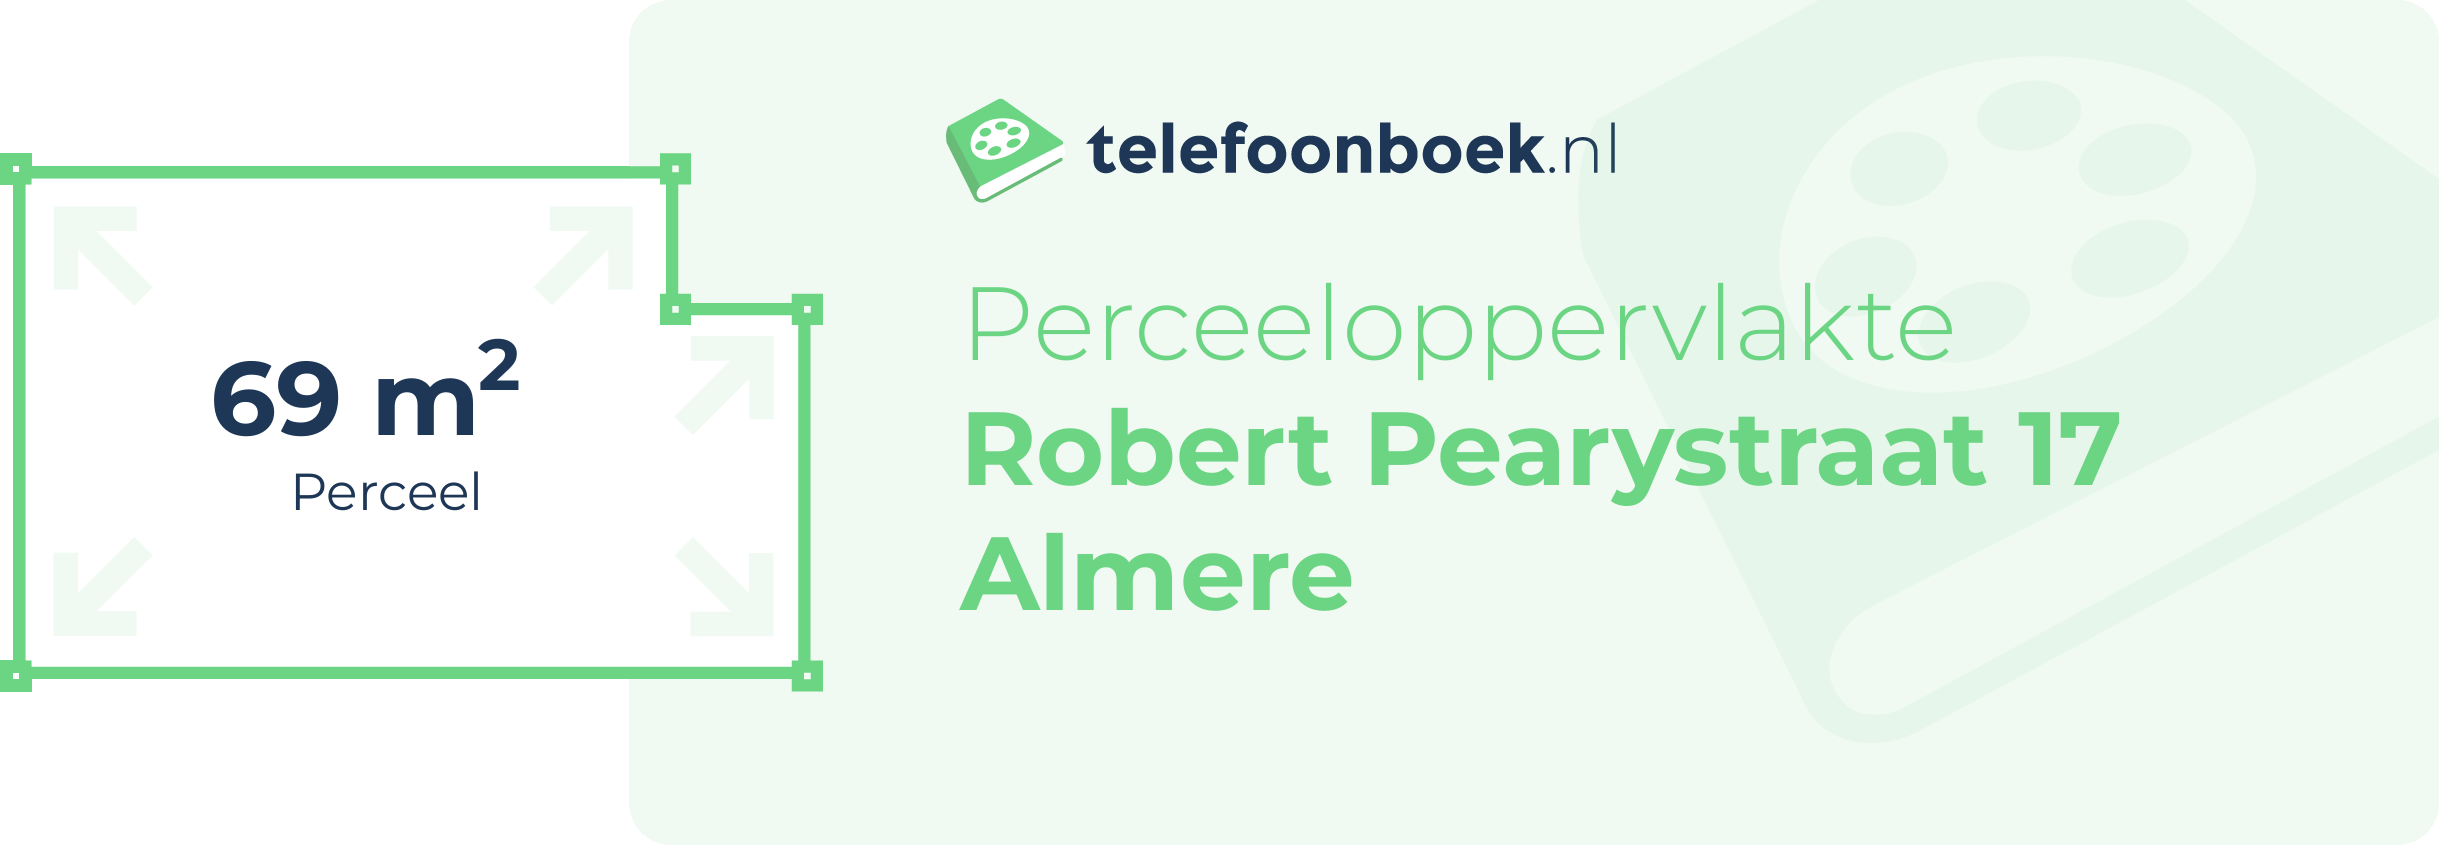 Perceeloppervlakte Robert Pearystraat 17 Almere